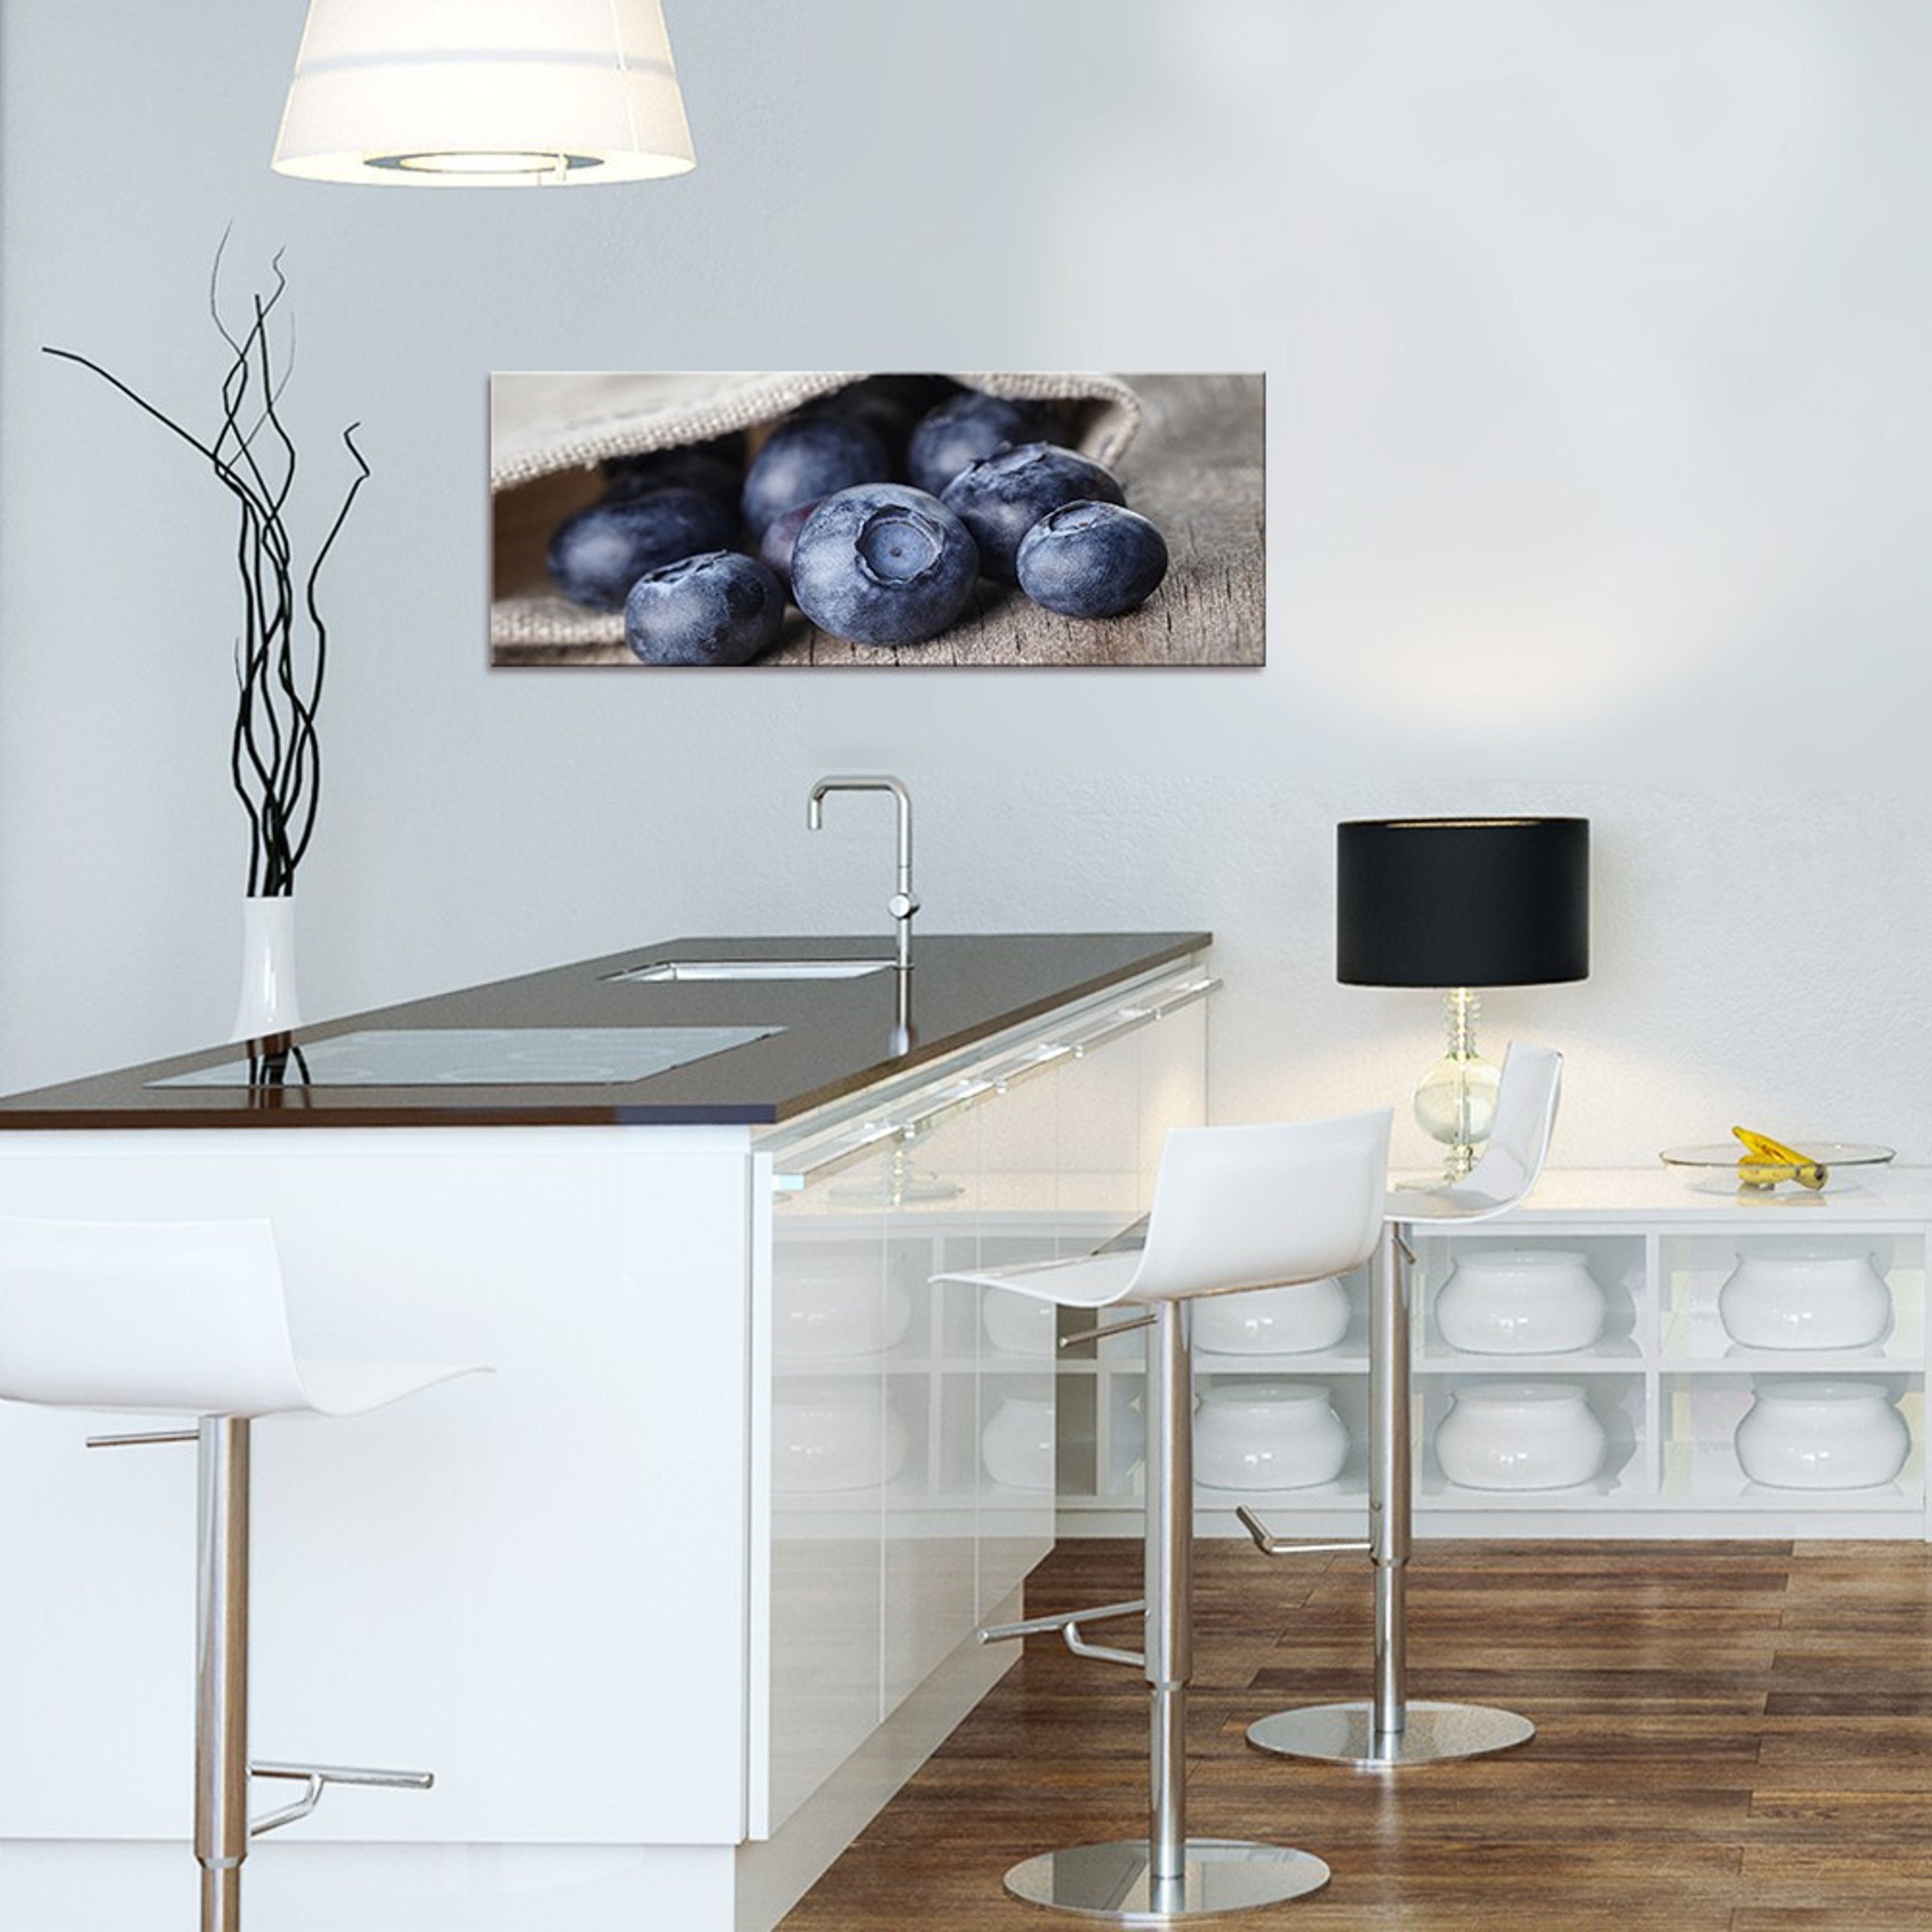 Küche Küchenmotiv: Landhaus 80x30cm Glas Blaubeeren, artissimo Beeren Bild Küchenbild aus Glasbild Glasbild